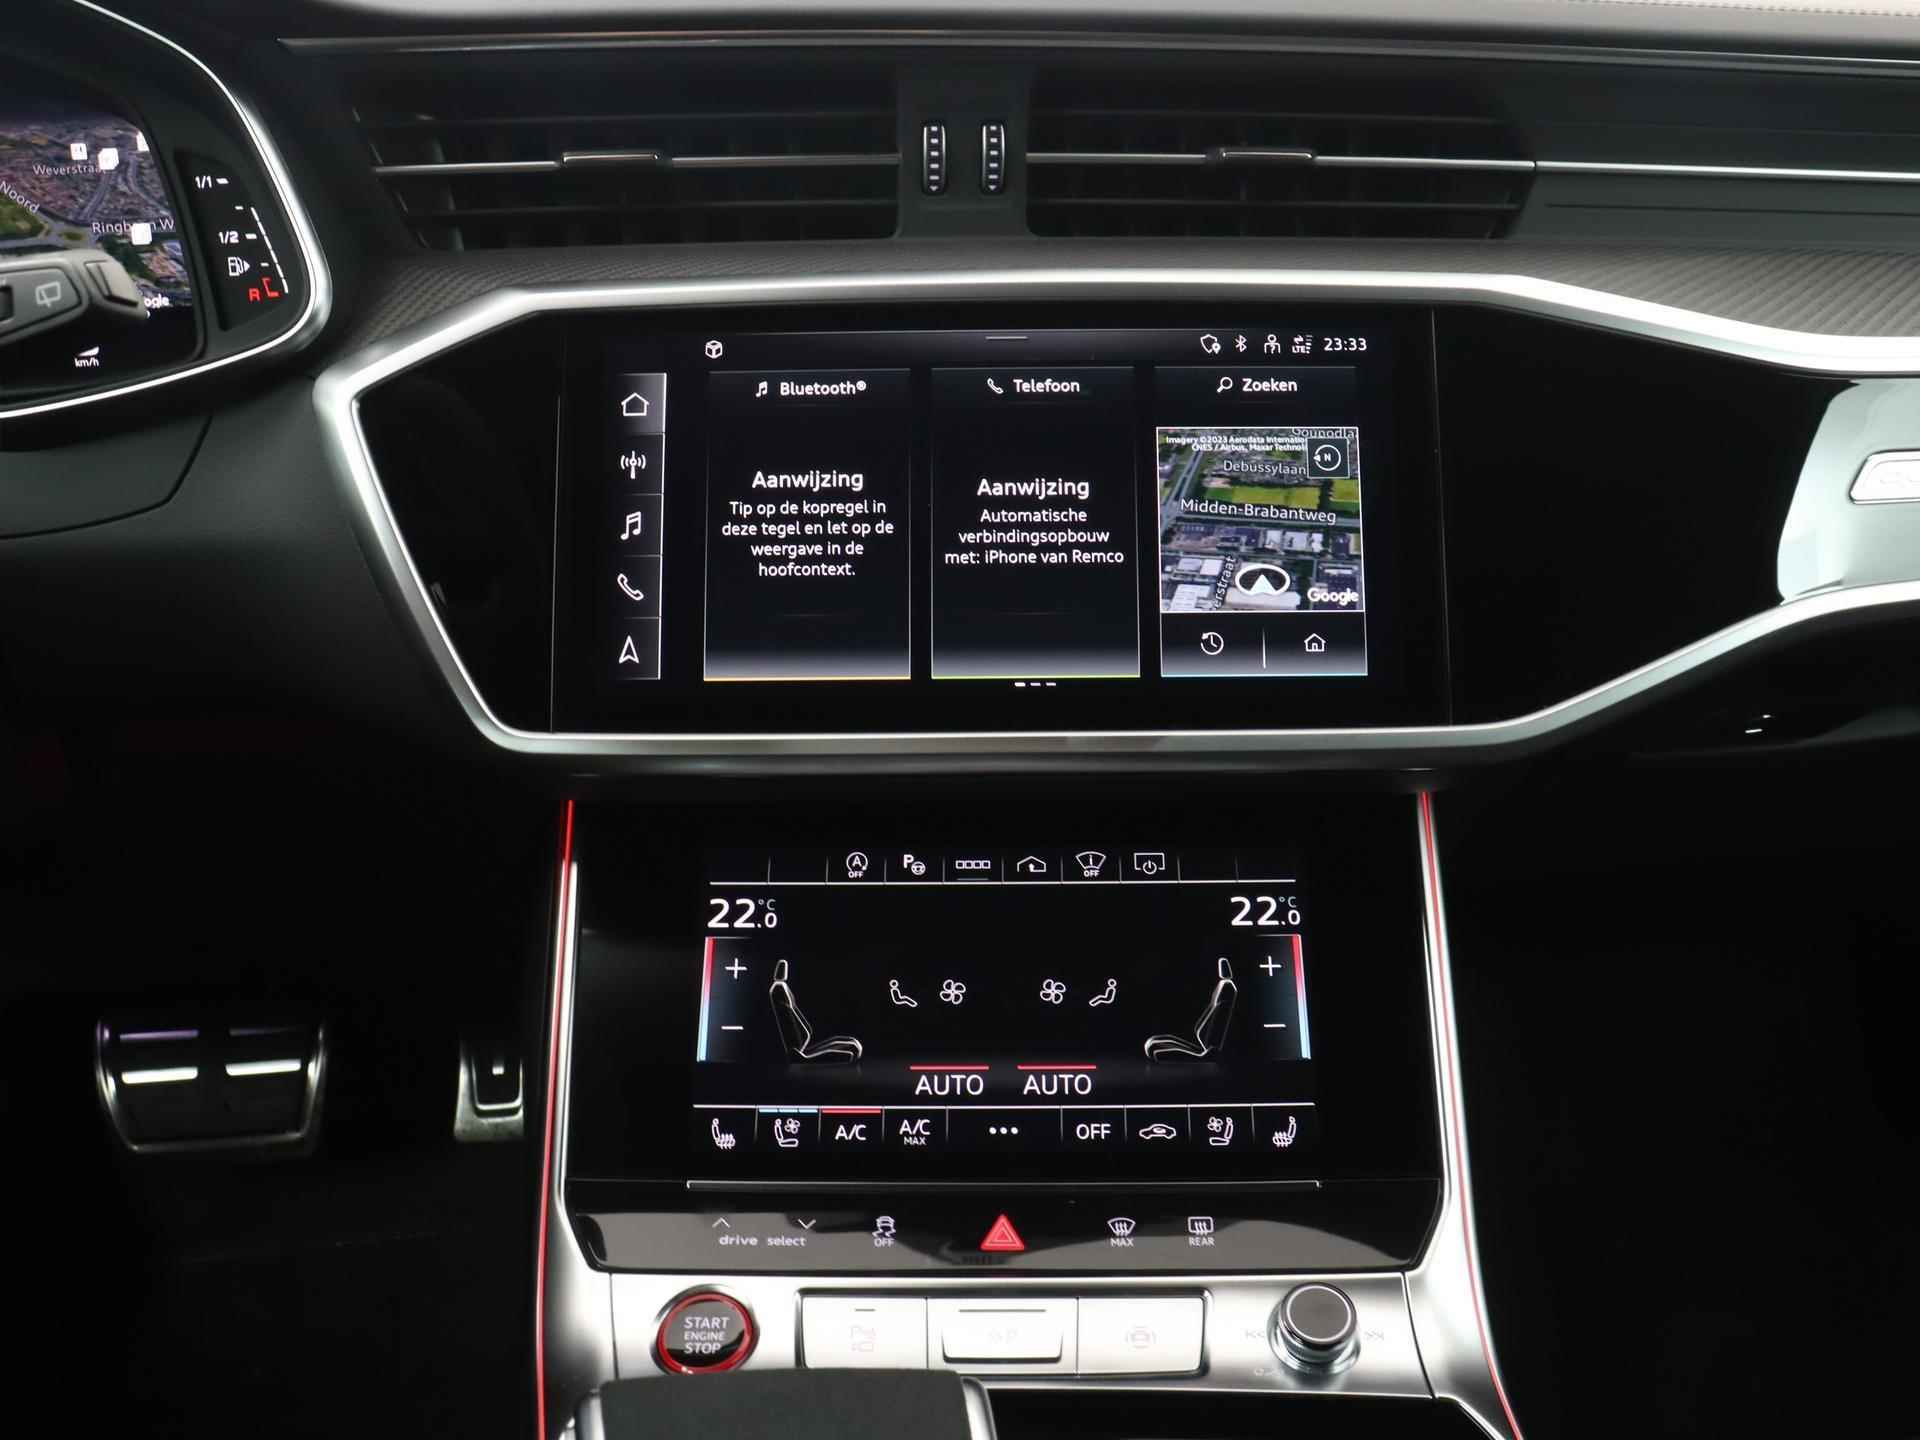 Audi RS6 TFSI quattro 600 PK | Head-up display | Bang & Olufsen Soundsystem | 22 inch lm velgen | RS Dynamic Pakket Plus | RS Design pakket Rood |Optiekpakket Zwart Plus | Panorama dak | RS Sportuitlaat | Keramische remschijven Rood | RS Sportonderstel Plus | Servosluiting deuren | Nu € 36.129,- ACTIEKORTING! | DIRECT LEVERBAAR! | NIEUWE AUTO! | - 15/35